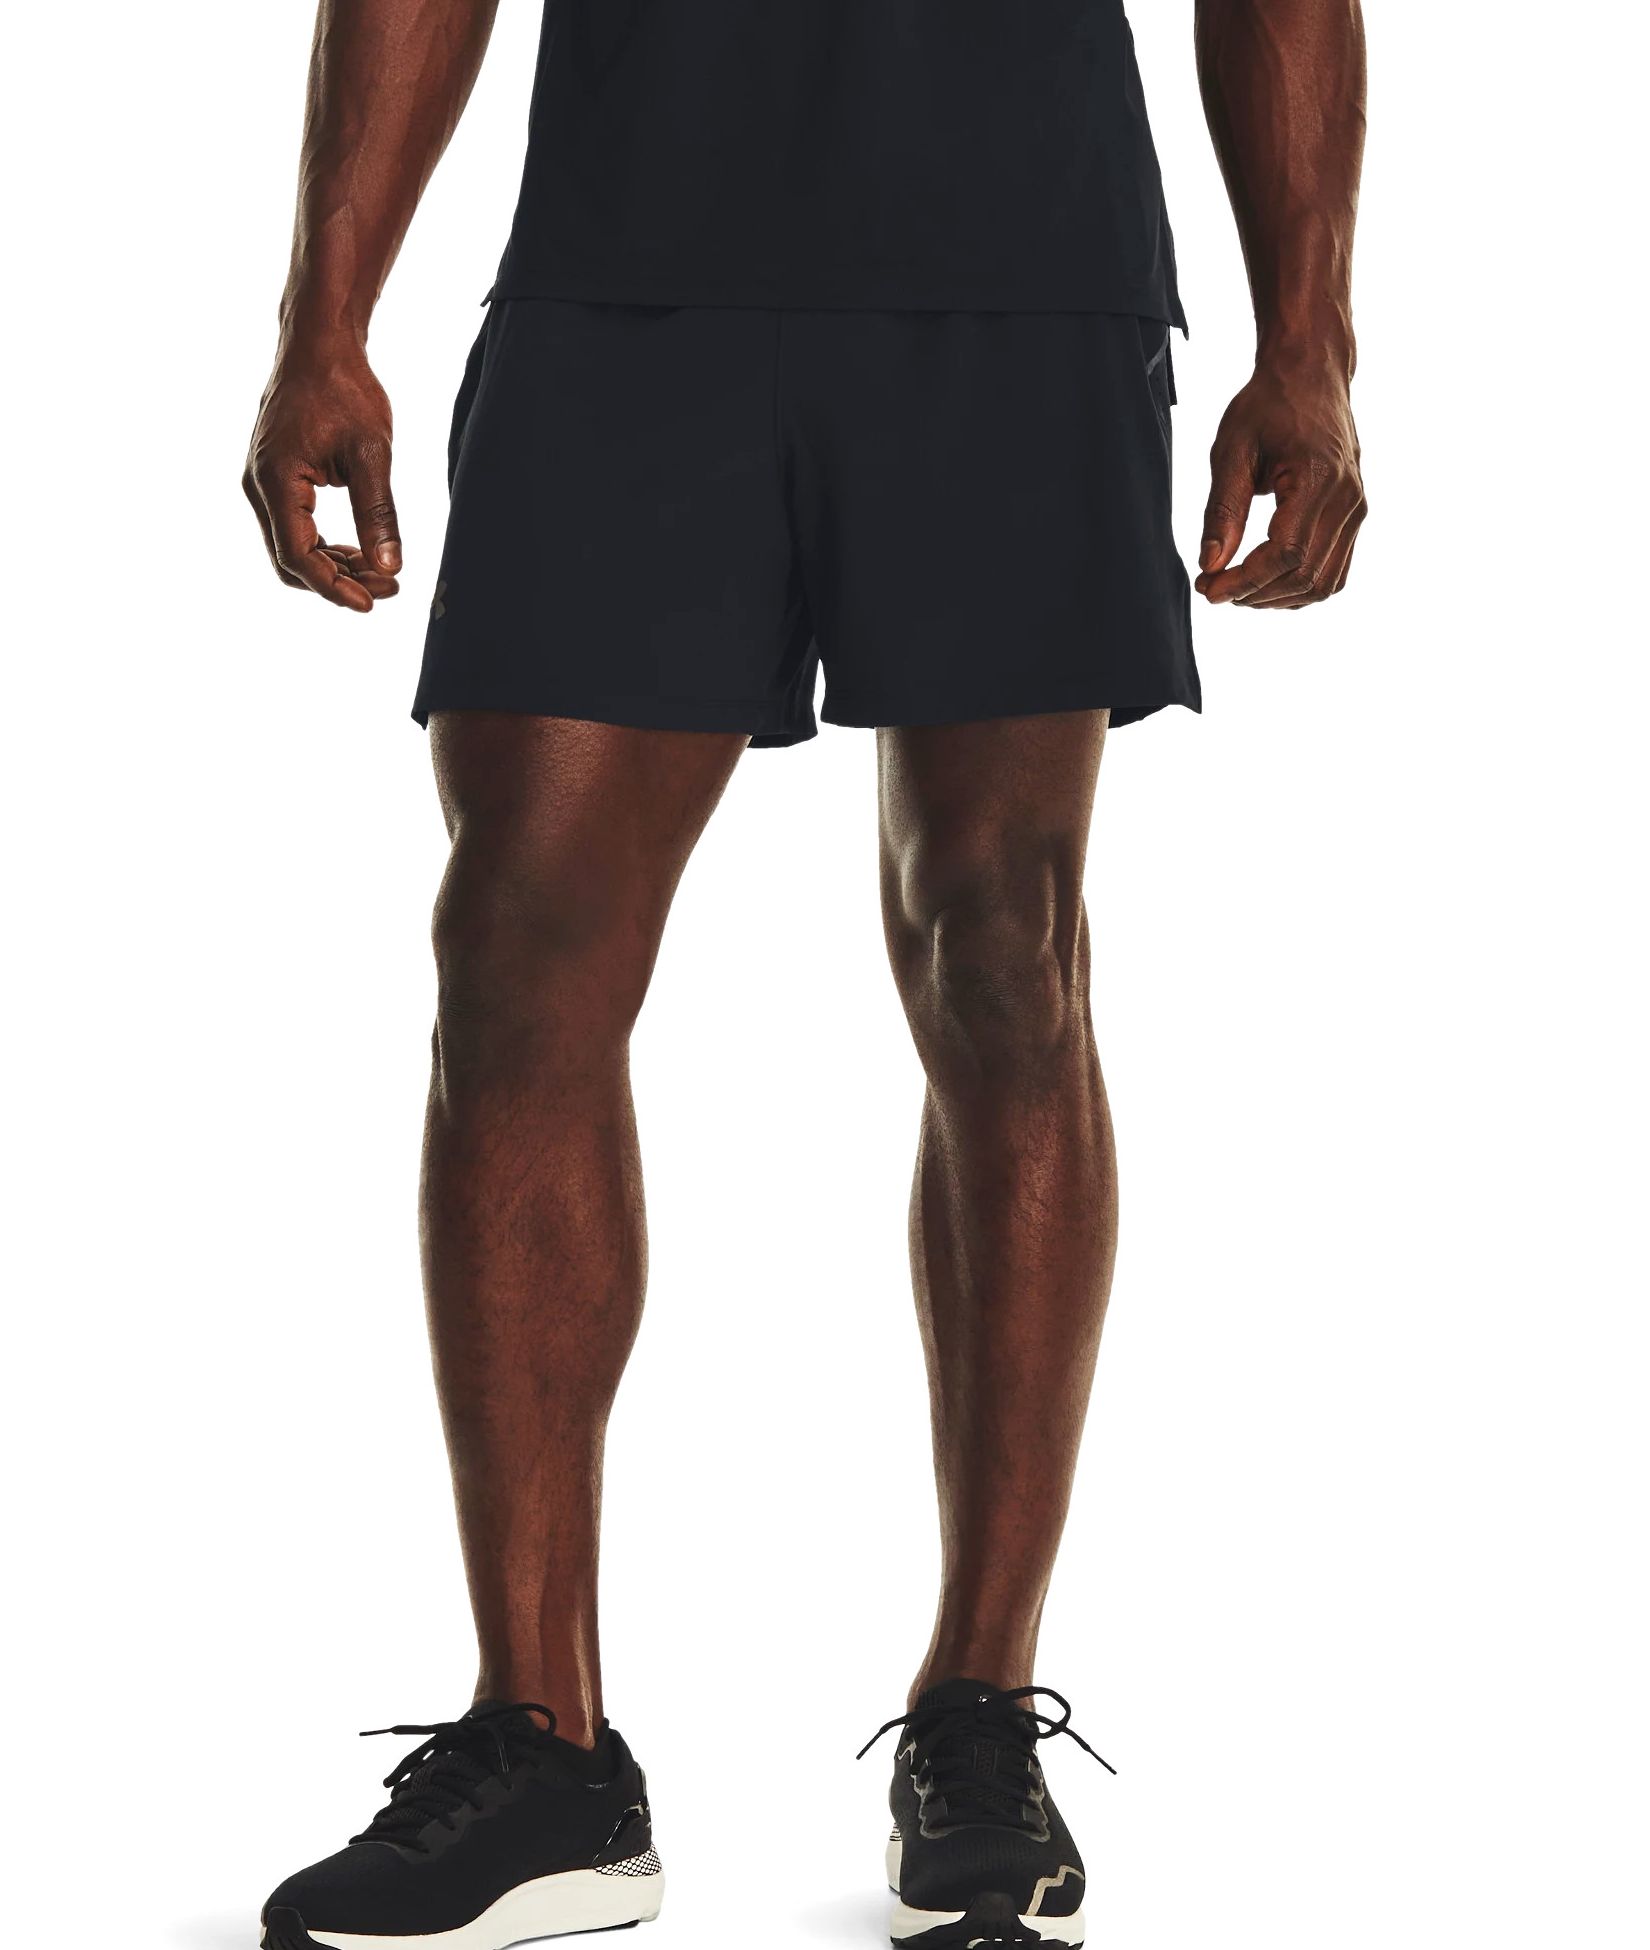 Спортивные шорты Under Armour Launch Pro 5'' для мужчин, размер XL, 1376509-001